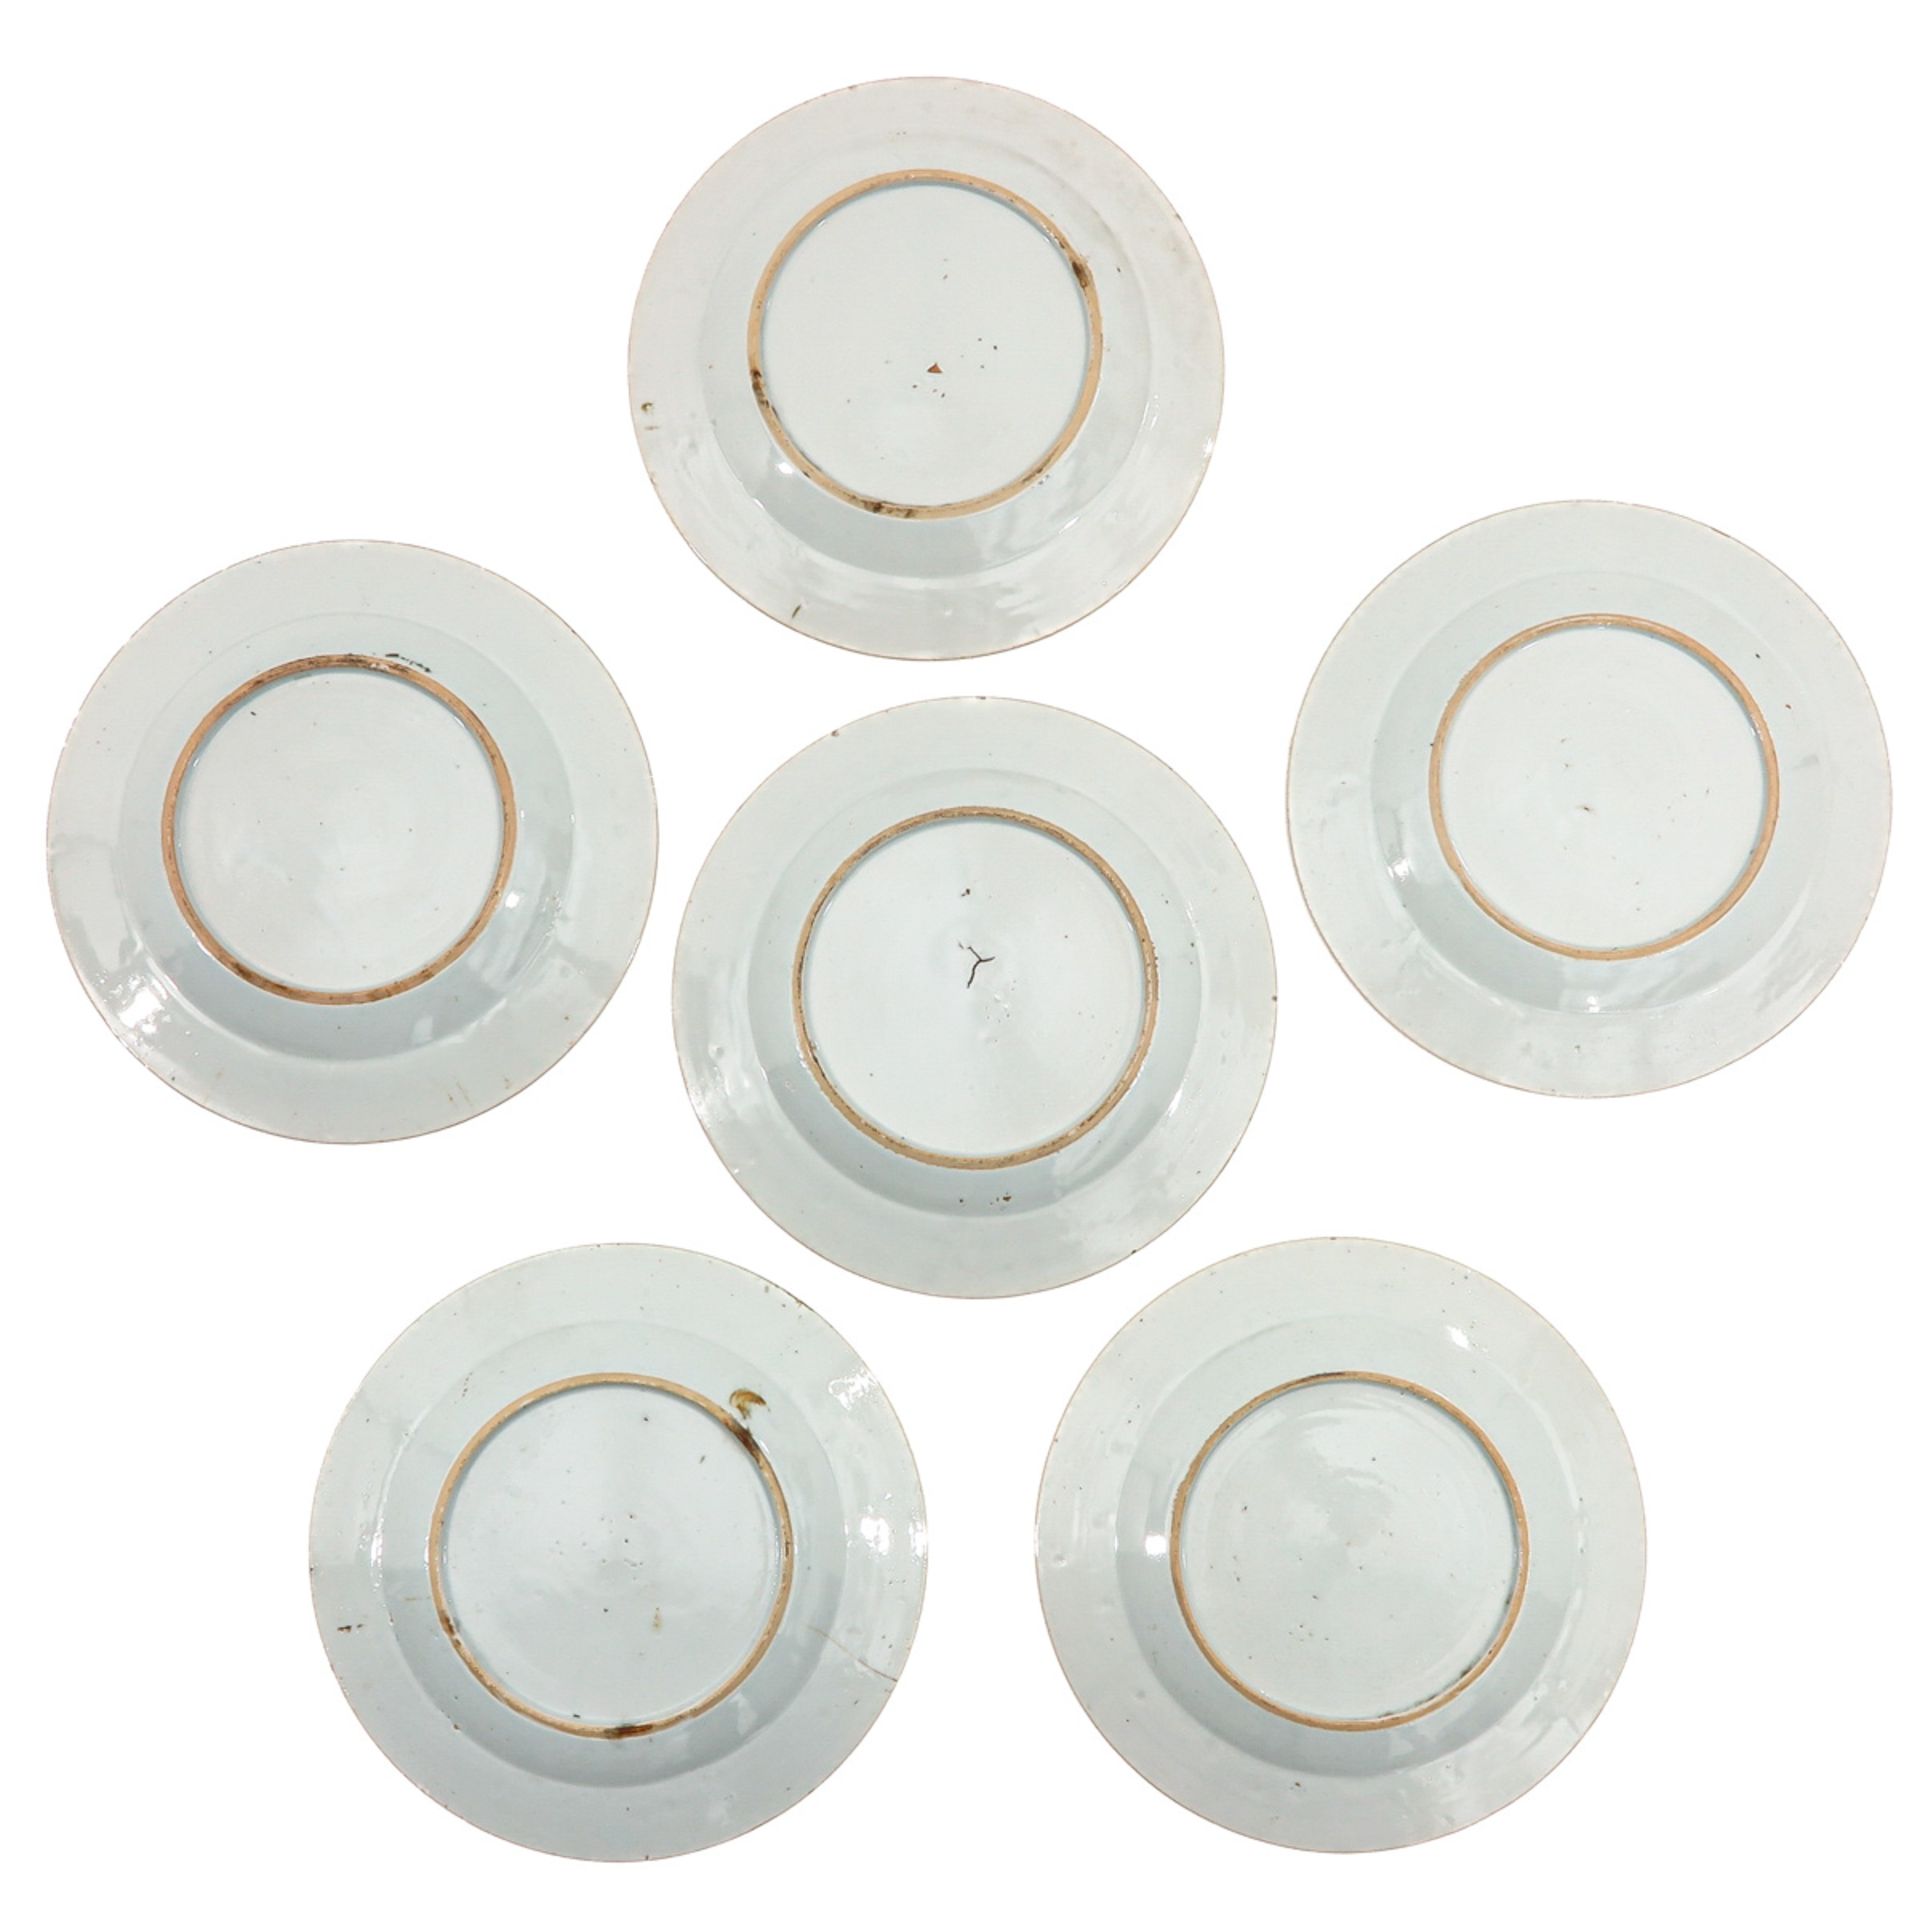 A Series of 6 Imari Plates - Bild 2 aus 10